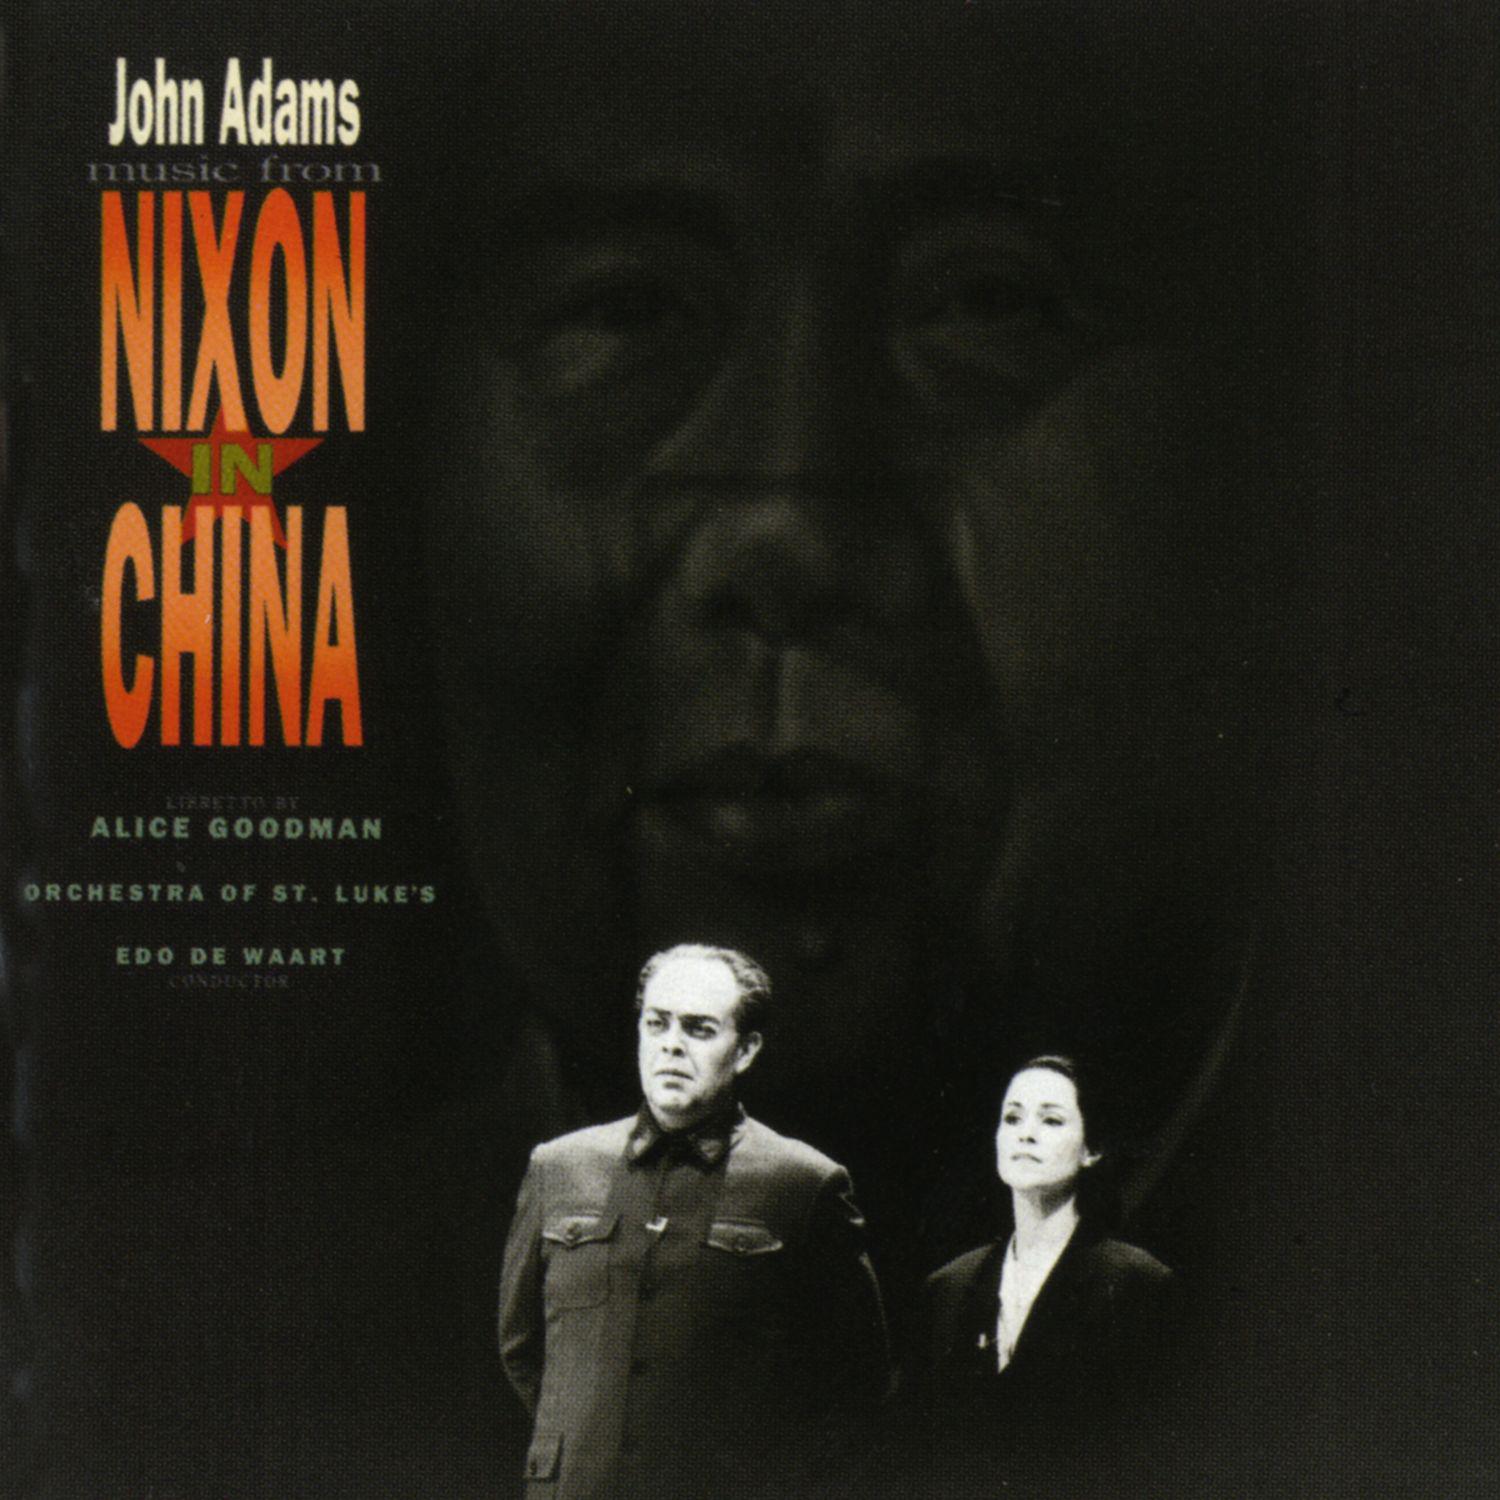 Nixon in China, Act I, Scene 3:"Mr. Premier, Distinguished Guests"